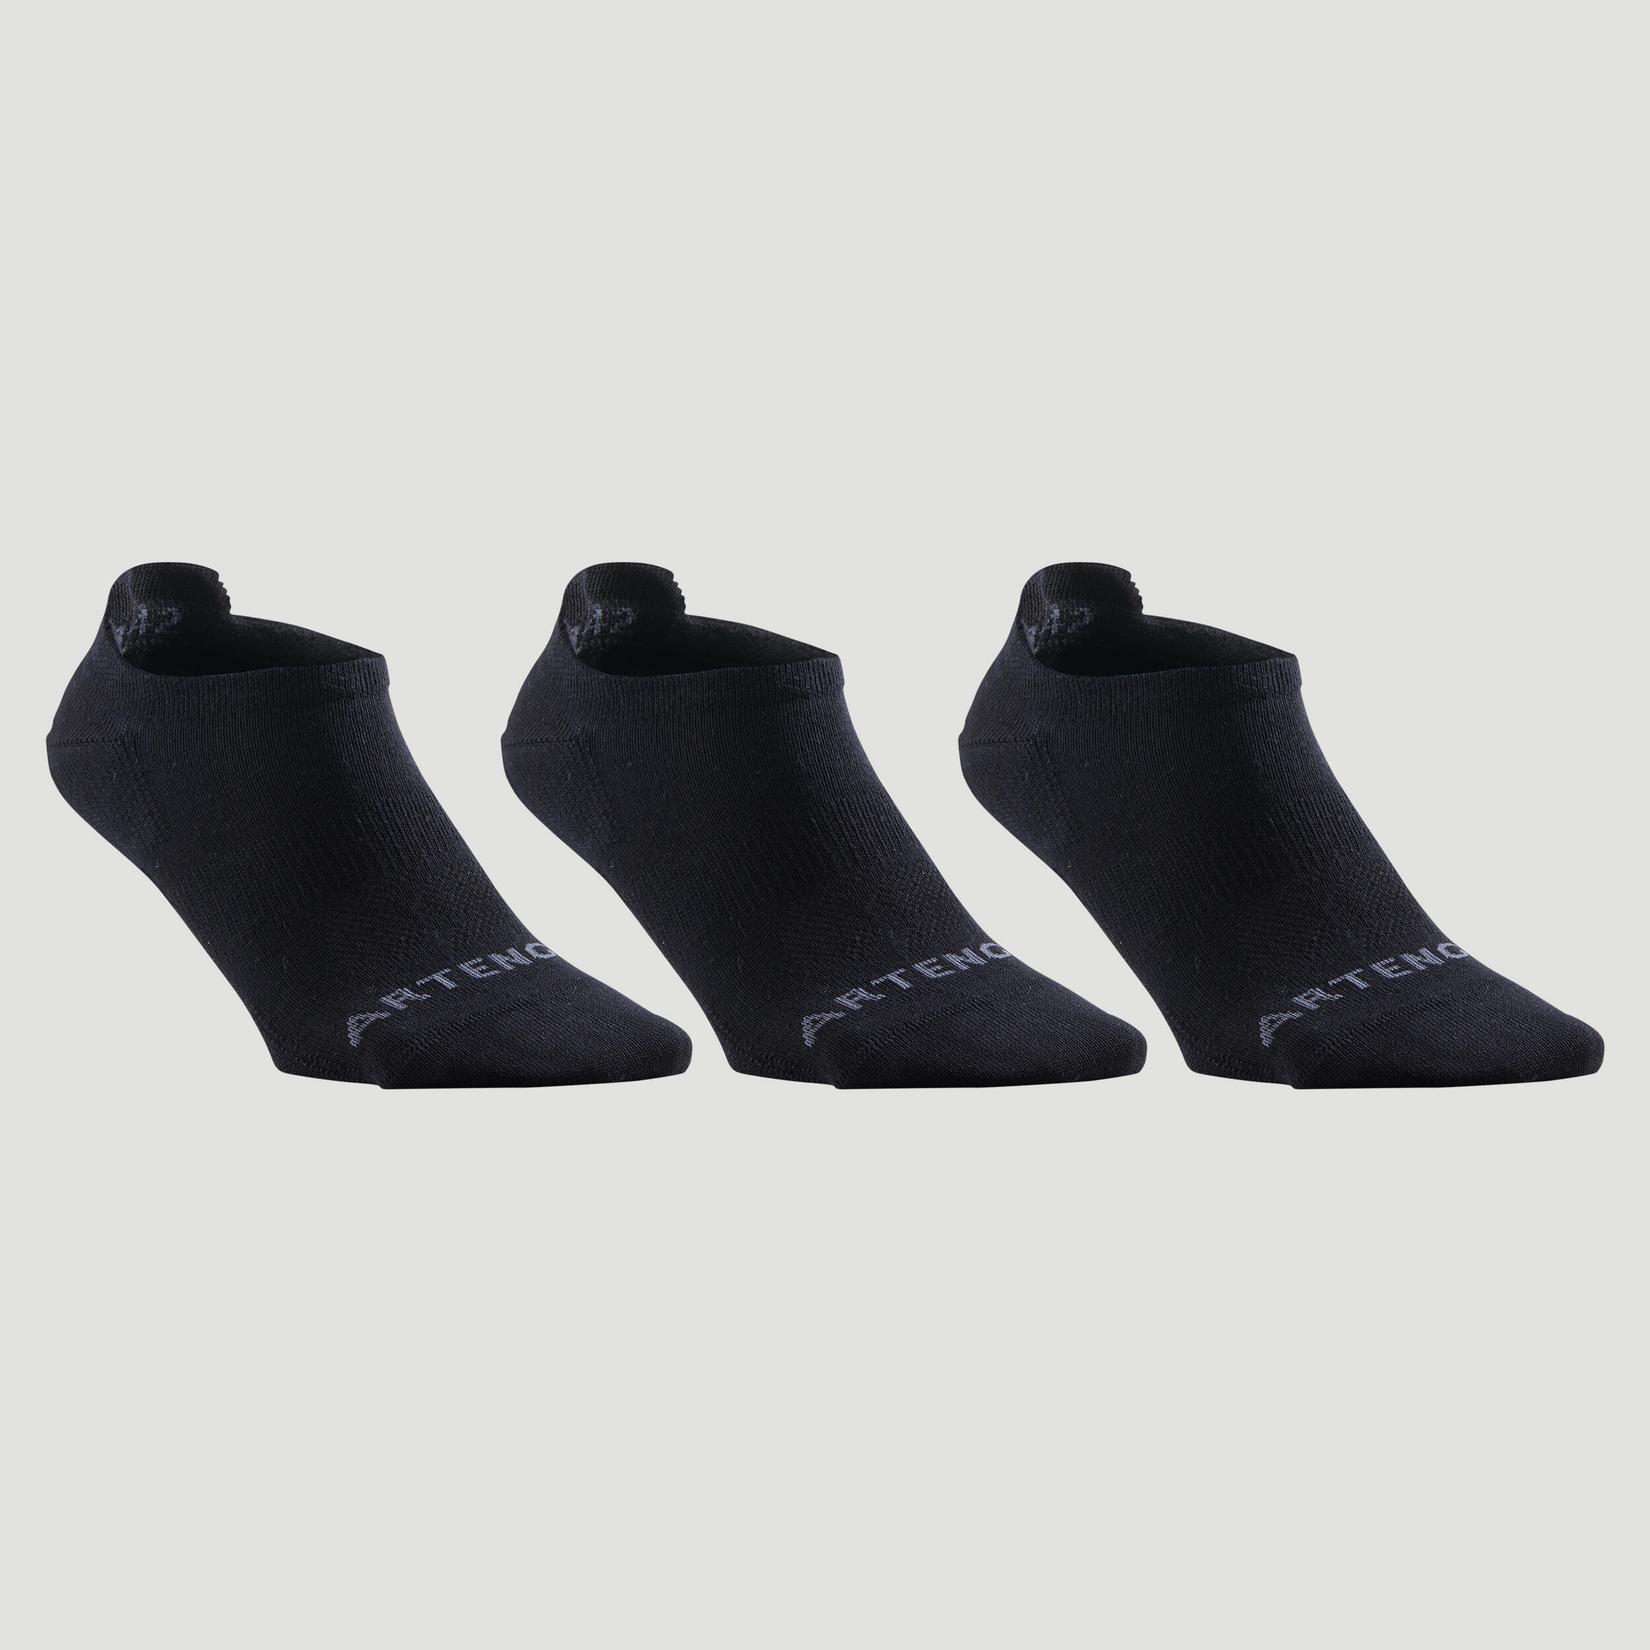 Προσφορά Χαμηλές αθλητικές κάλτσες RS 160 3 ζεύγη - Μαύρο για 6€ σε Decathlon